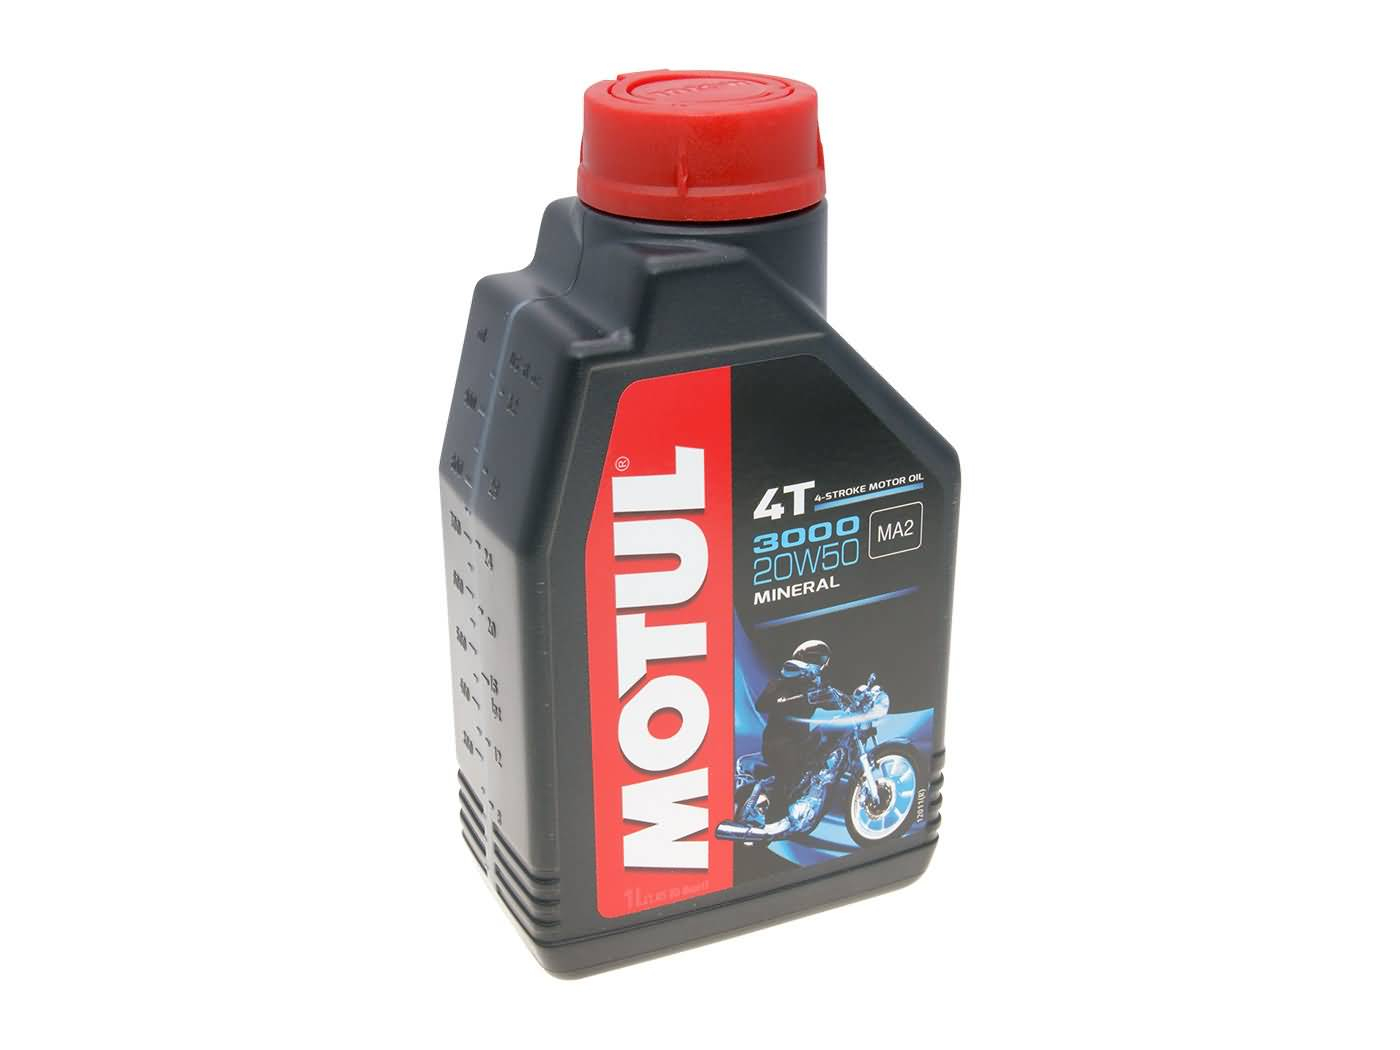 Motul Engine Oil 4-stroke 4T 3000 20W50 MA2 1 Liter